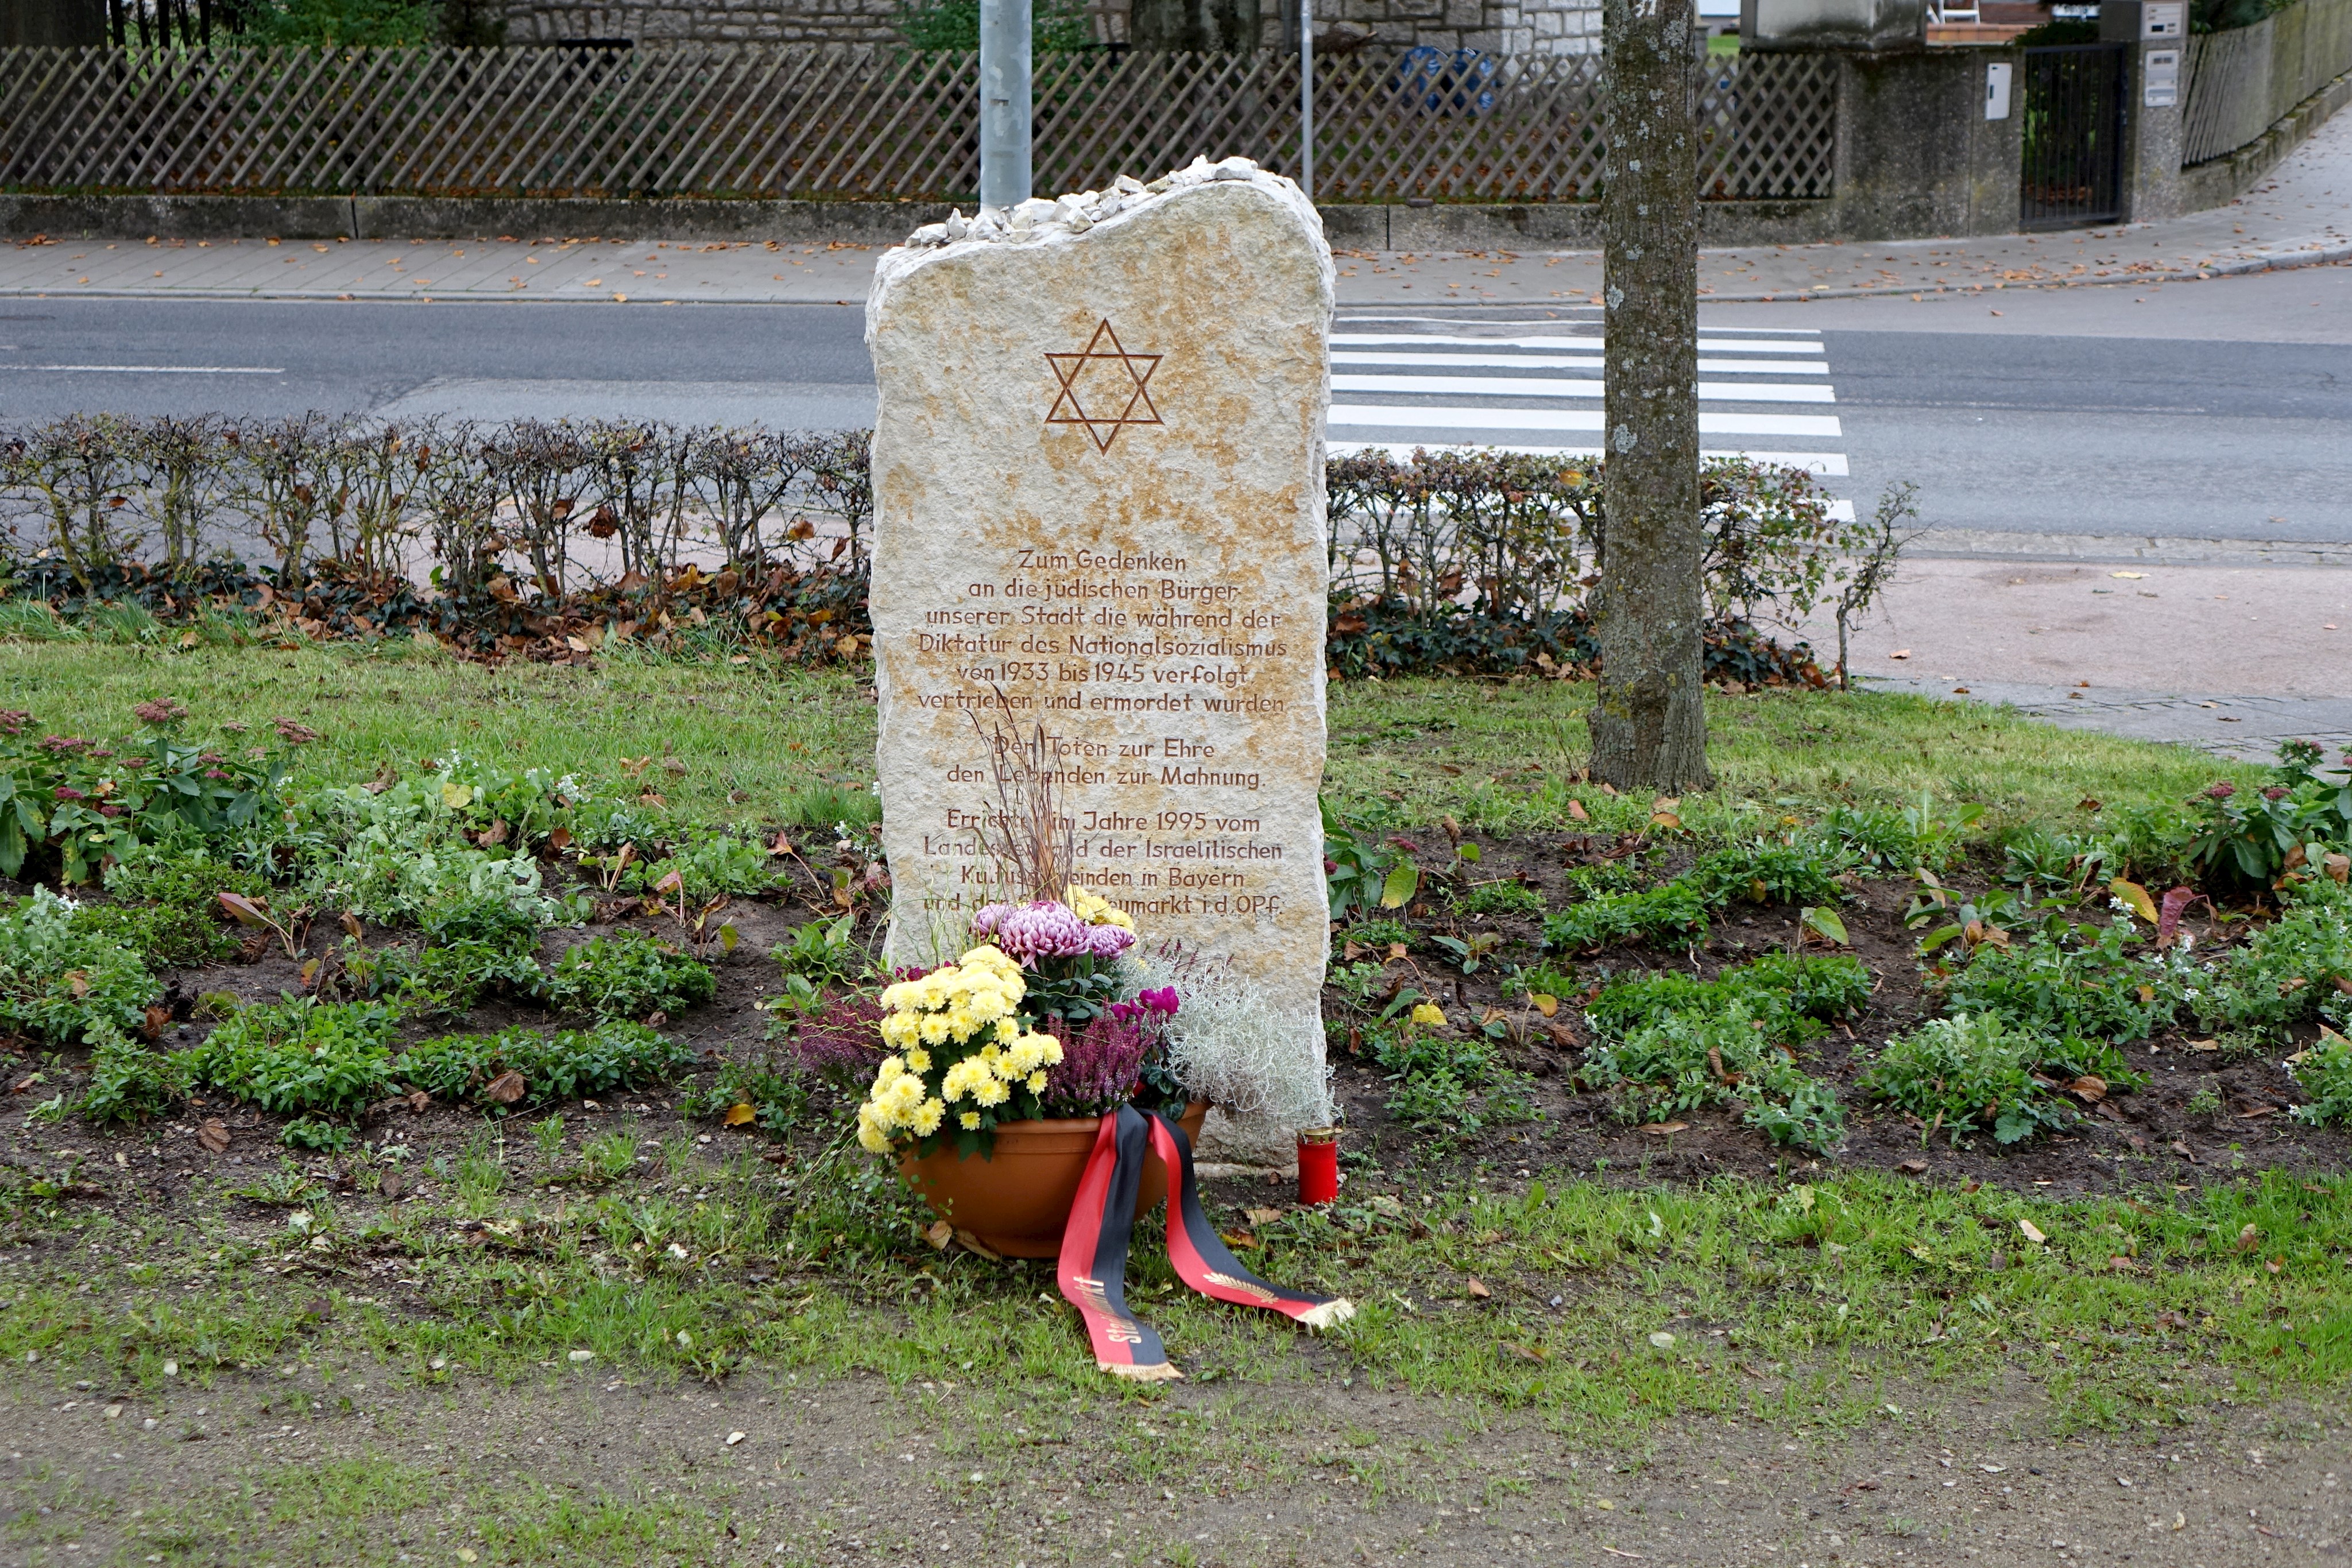 Stadt gedenkt der Pogromnacht mit Blumengebinde am Gedenkstein für jüdisches Leben